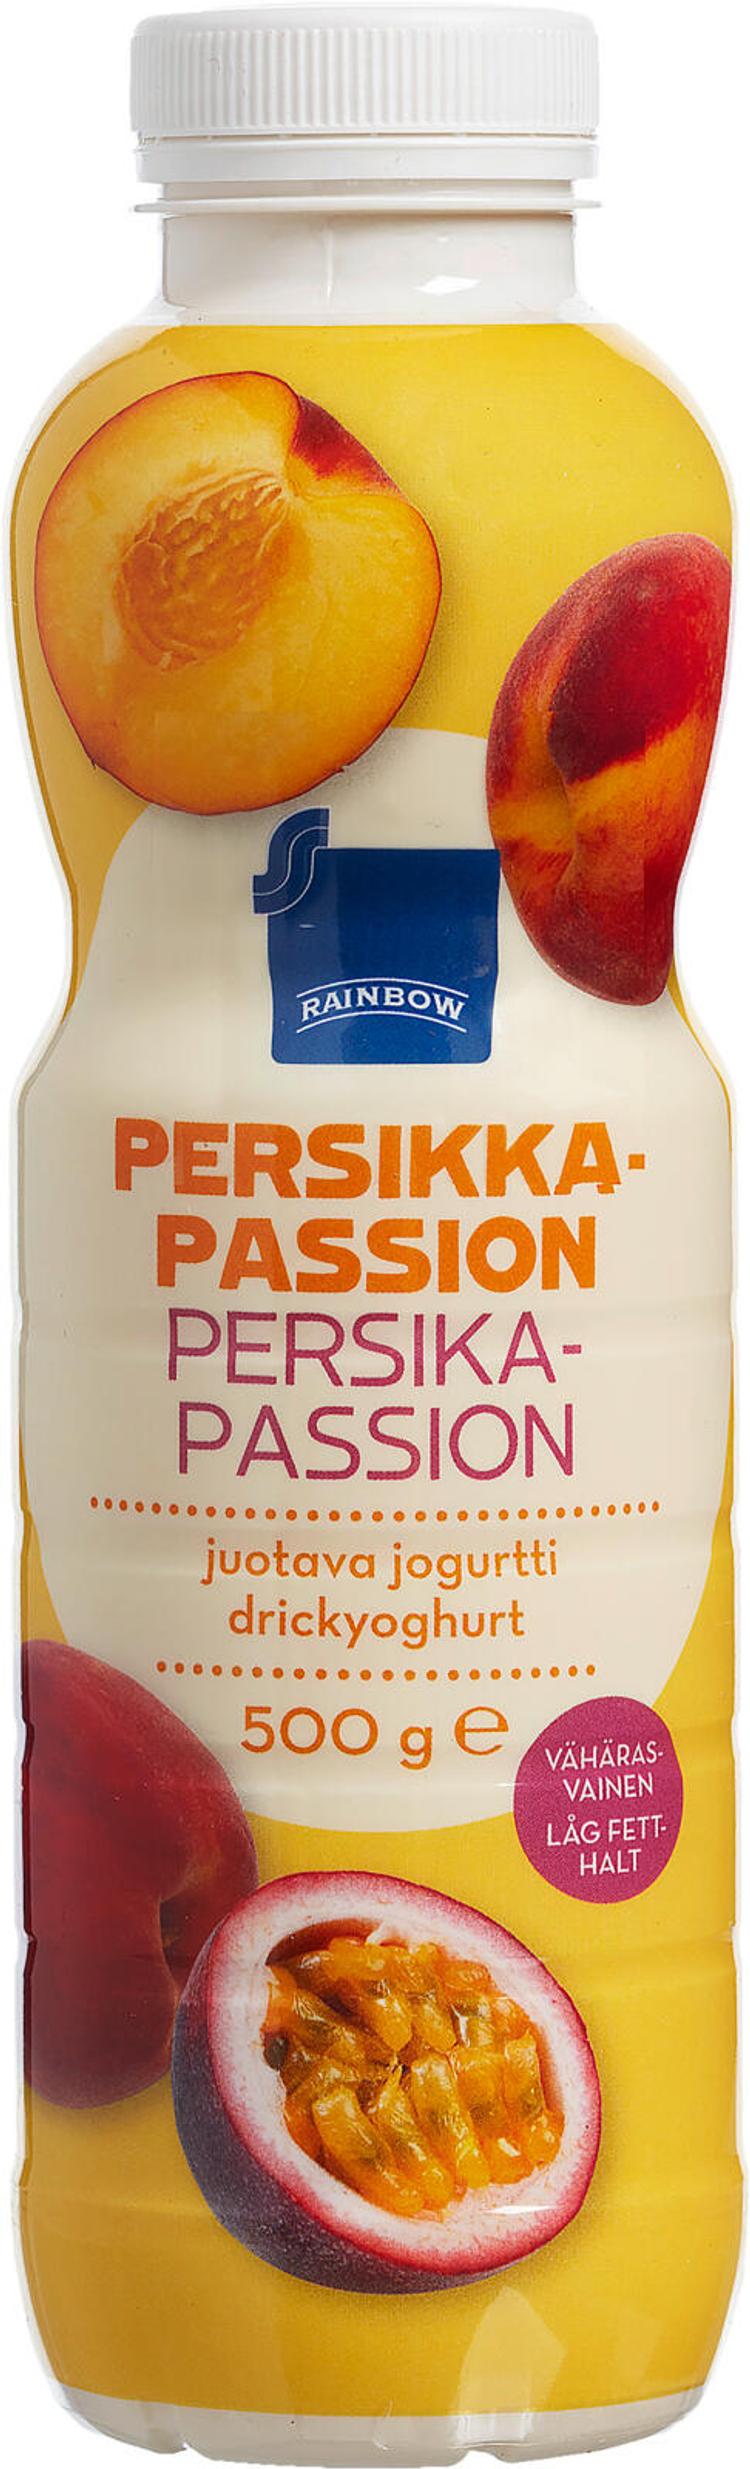 Rainbow juotava persikka-passion jogurtti 500g